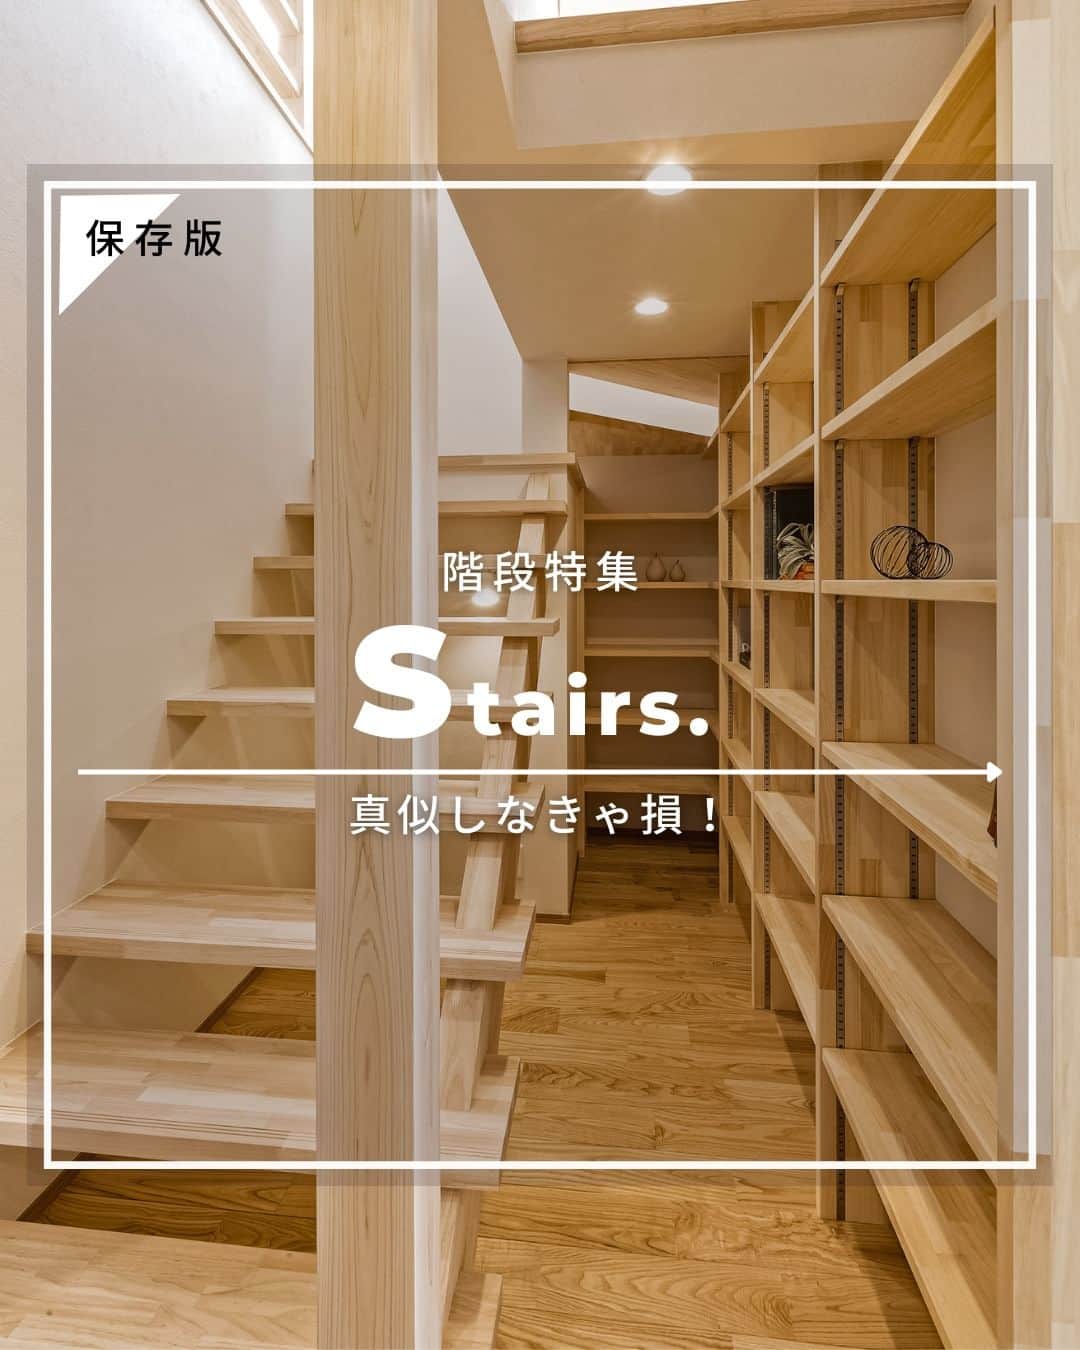 OKOCHI STYLE(香川県) のインスタグラム：「お家づくりの参考に。 暖かみのあるデザインの階段特集✨  ーーーーーーーーー 香川県で木の家を建てる #大河内工務店  #施工事例 を多数ご紹介しています。 ▷ @okochi.komuten  創業1953年。 #上質な家 をていねいに。 #自然素材 と技術にこだわった家づくりをしています。  🗾施工エリア 香川県・愛媛県（四国中央市） その他エリアはご相談ください  お問い合わせやご質問は DM、コメント、HPにてお気軽にお問い合わせください。  ーーーーーーーーー 資材倉庫をリノベーションした #わが家ギャラリー木きん堂 ギャラリーのご案内やcafeの情報をお届けします🌟 ▷ @mokkindo.cafe ーーーーーーーーー  #香川県 で #注文住宅 を建てるなら大河内工務店 ▷ @okochi.komuten  #一級建築士事務所 #自由設計 #木の家 #木の家づくり #自然素材の家 #無垢材 #新築 #新築一戸建て #マイホーム #マイホーム計画 #インテリア #家づくり #工務店だからつくれる家 #暮らしを楽しむ #香川新築 #香川注文住宅 #香川イベント #香川の家 #香川県工務店 #階段」